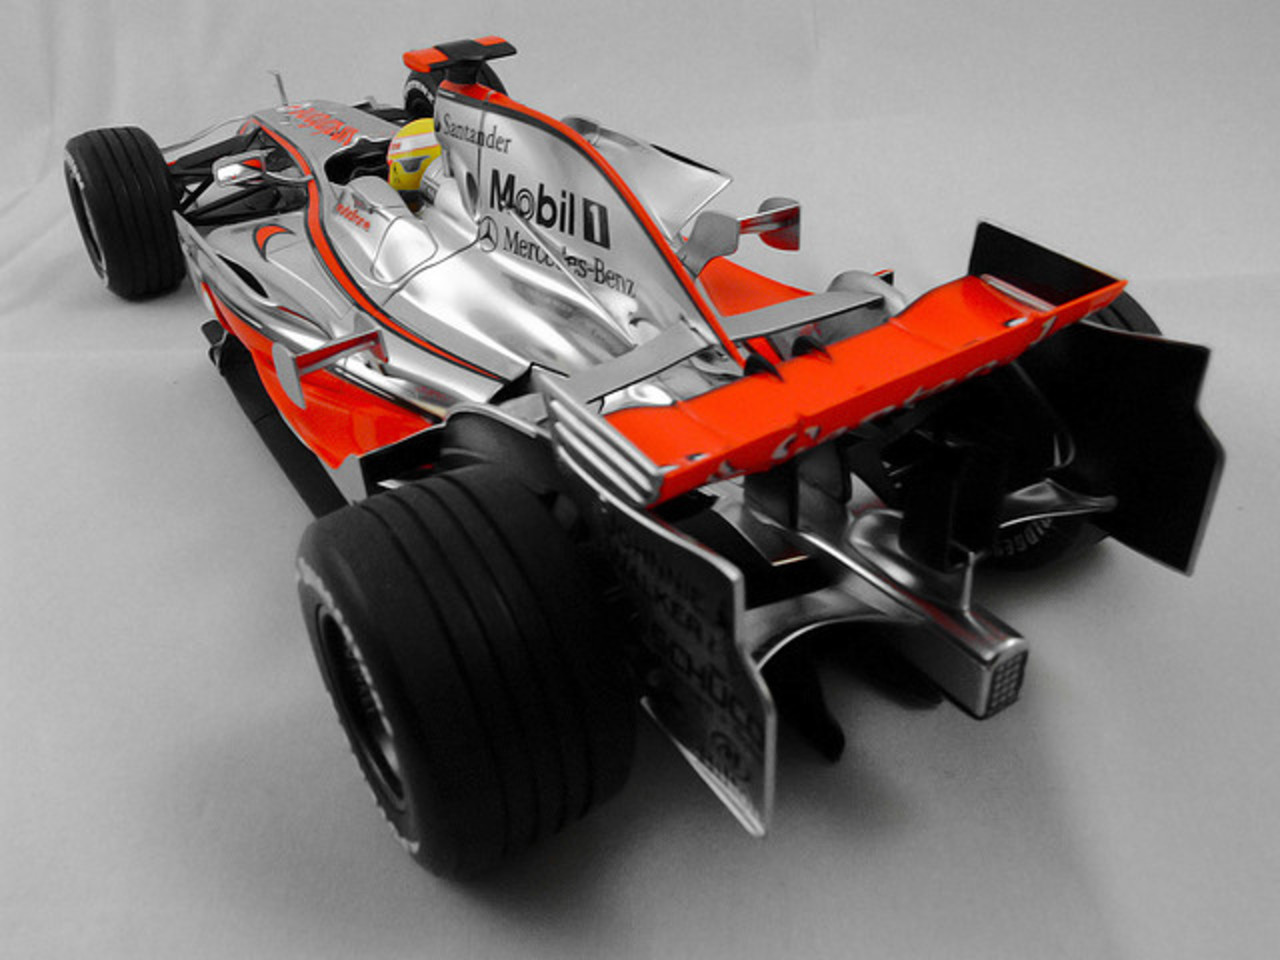 Vodafone McLaren Mercedes MP4 / 23 - Présentation du Championnat du Monde...